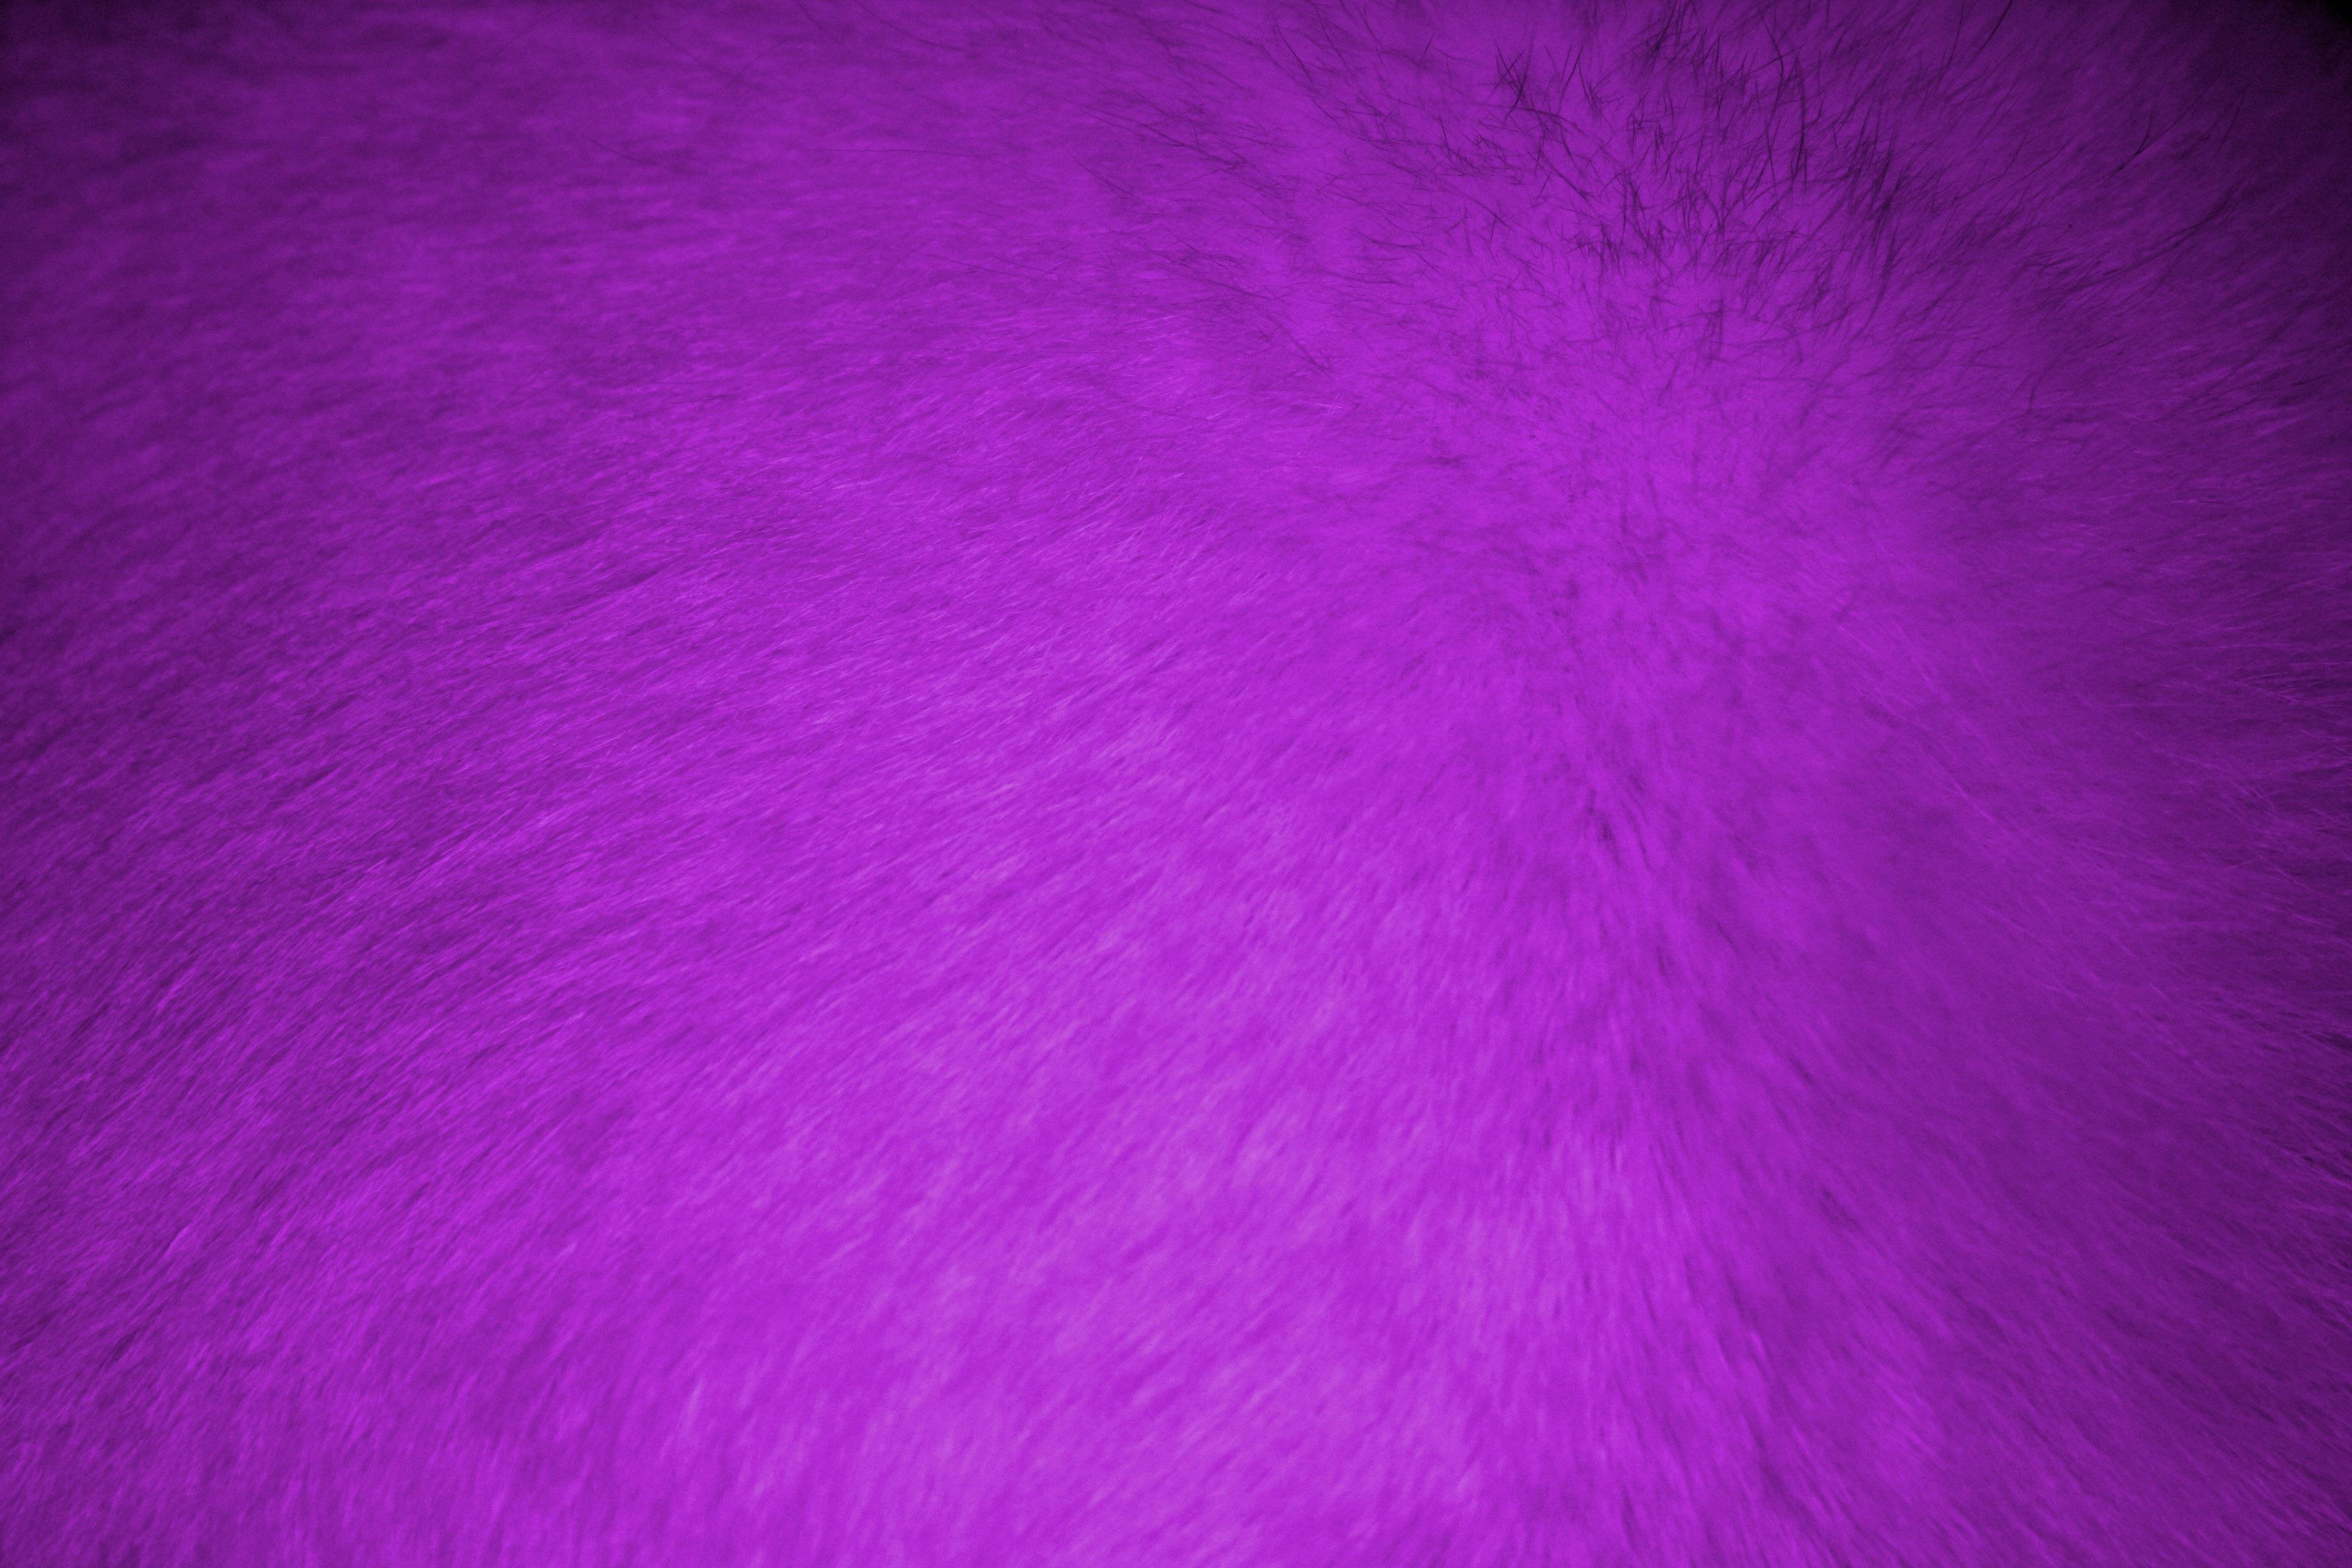 Purple Fur Texture Picture. Free Photograph. Photo Public Domain